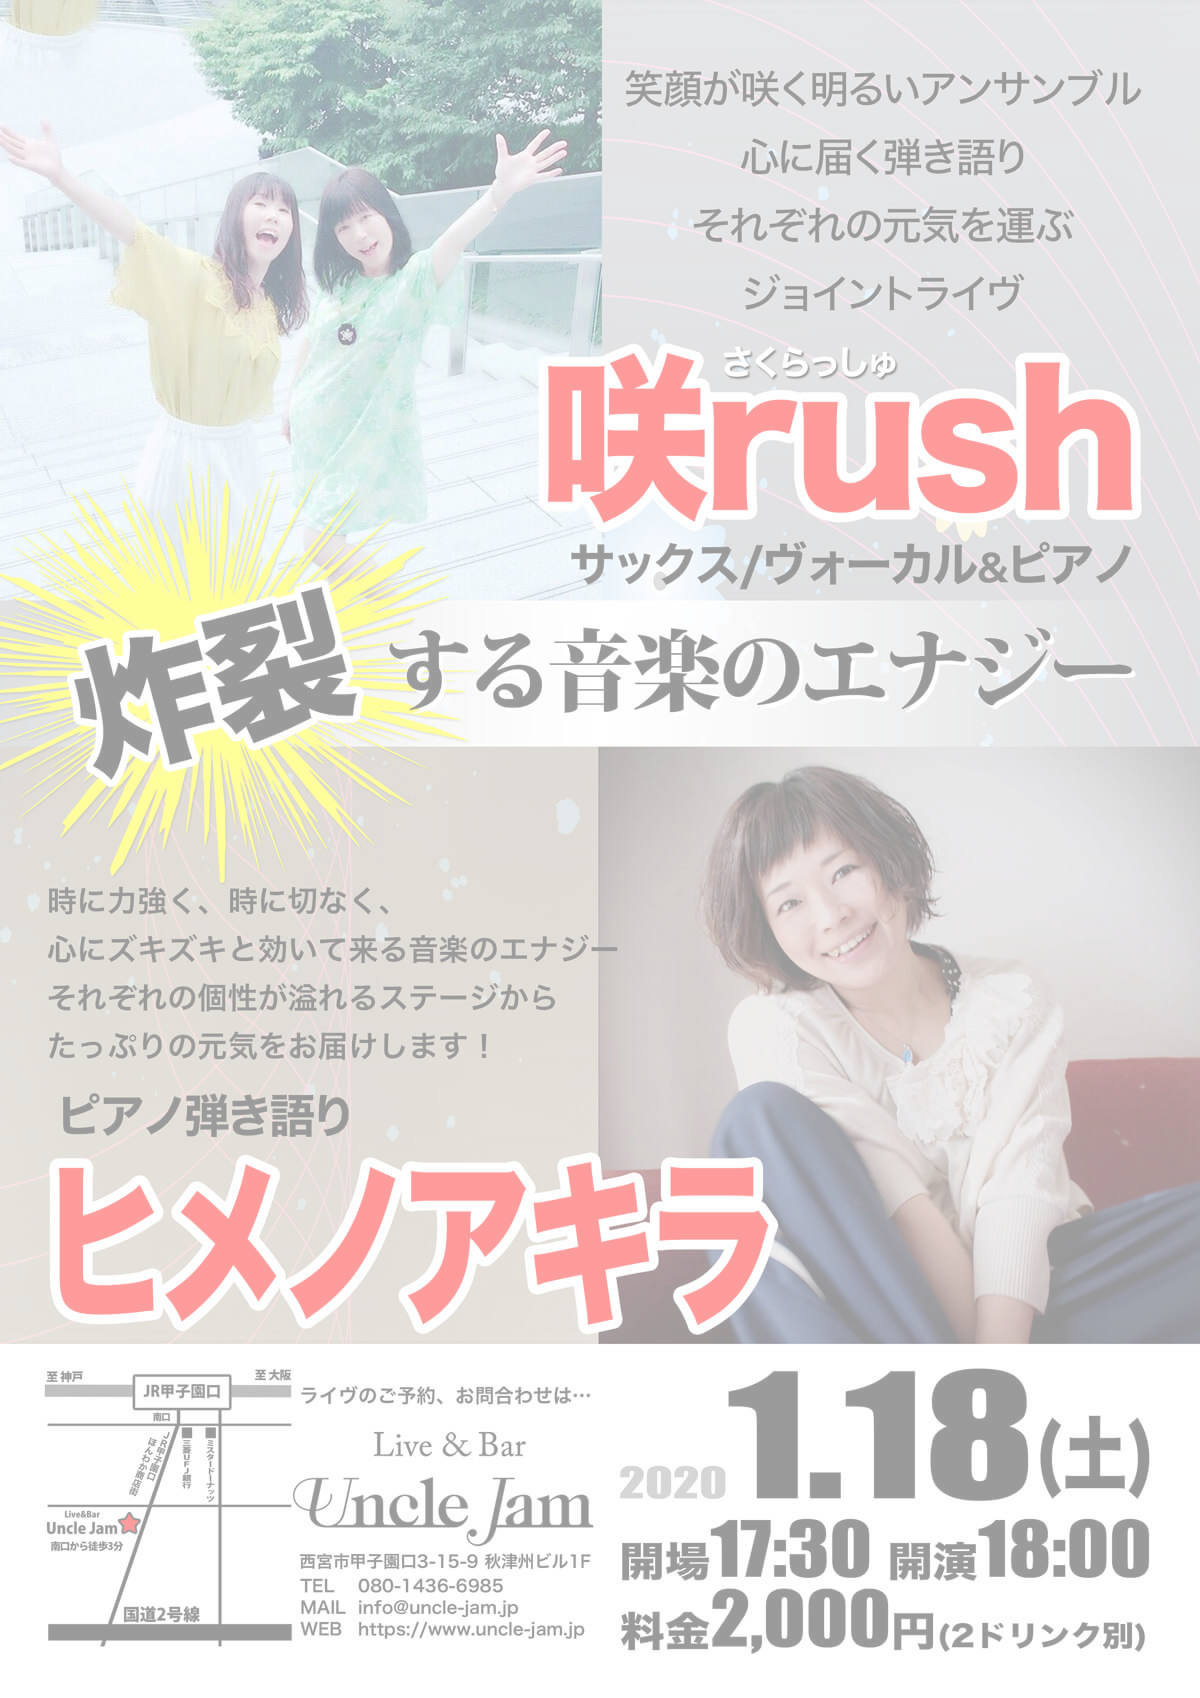 20200118_咲rush_Himeno